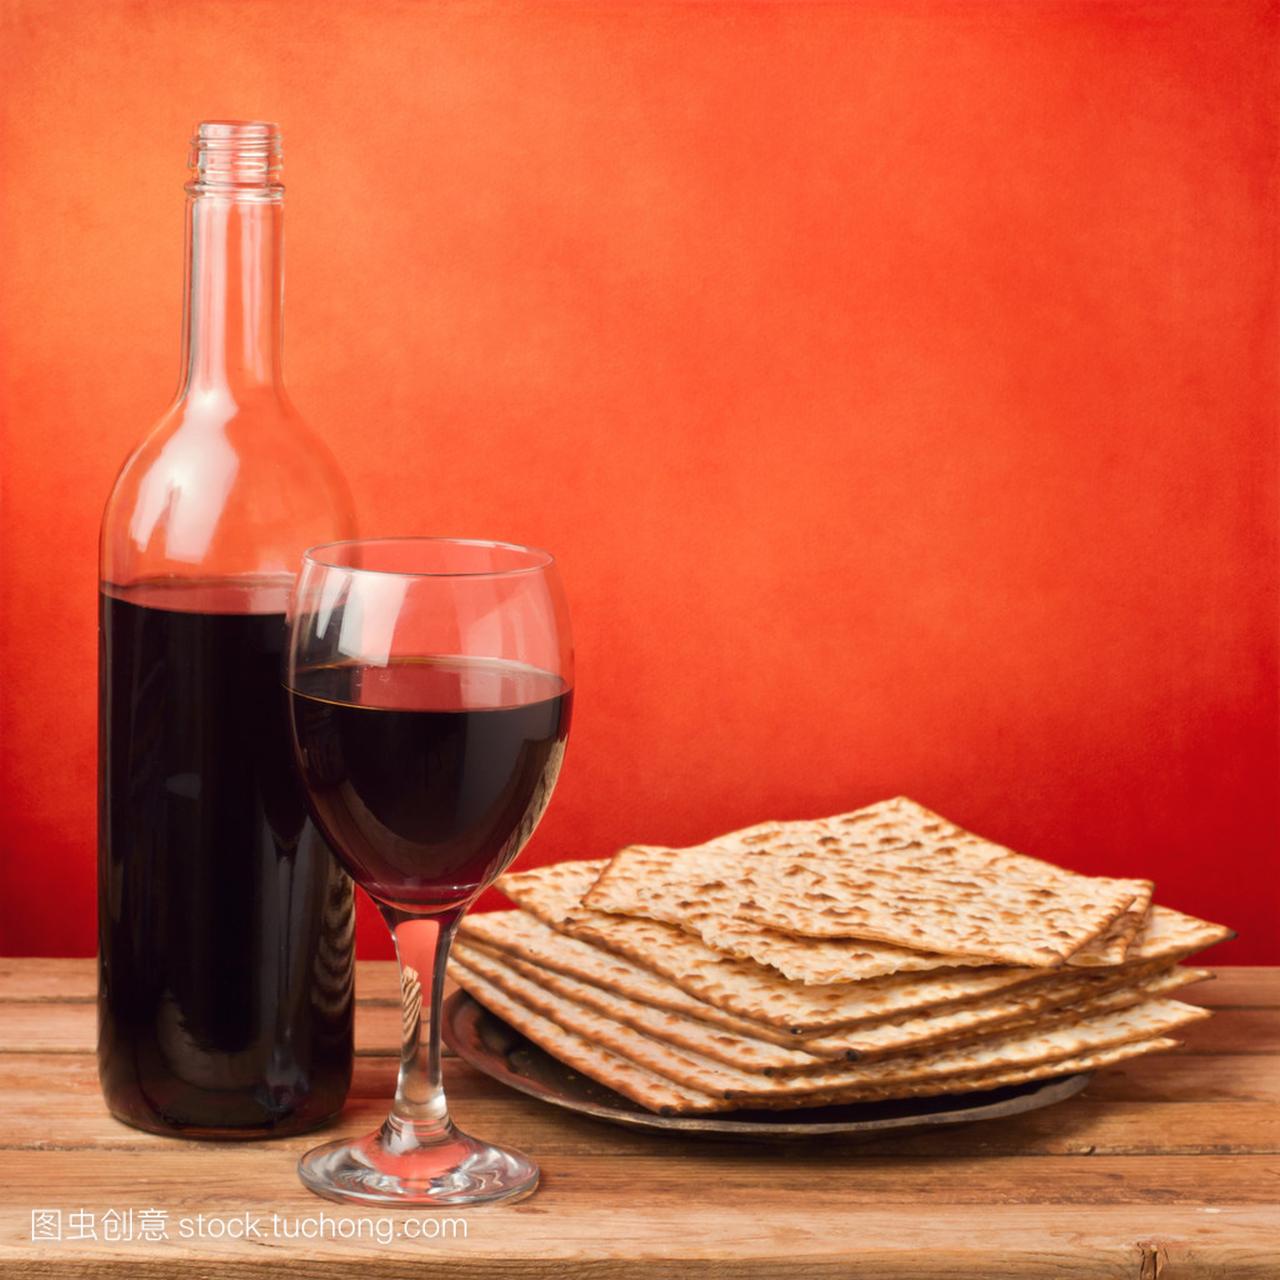 Matza 和葡萄酒的逾越节家宴庆祝